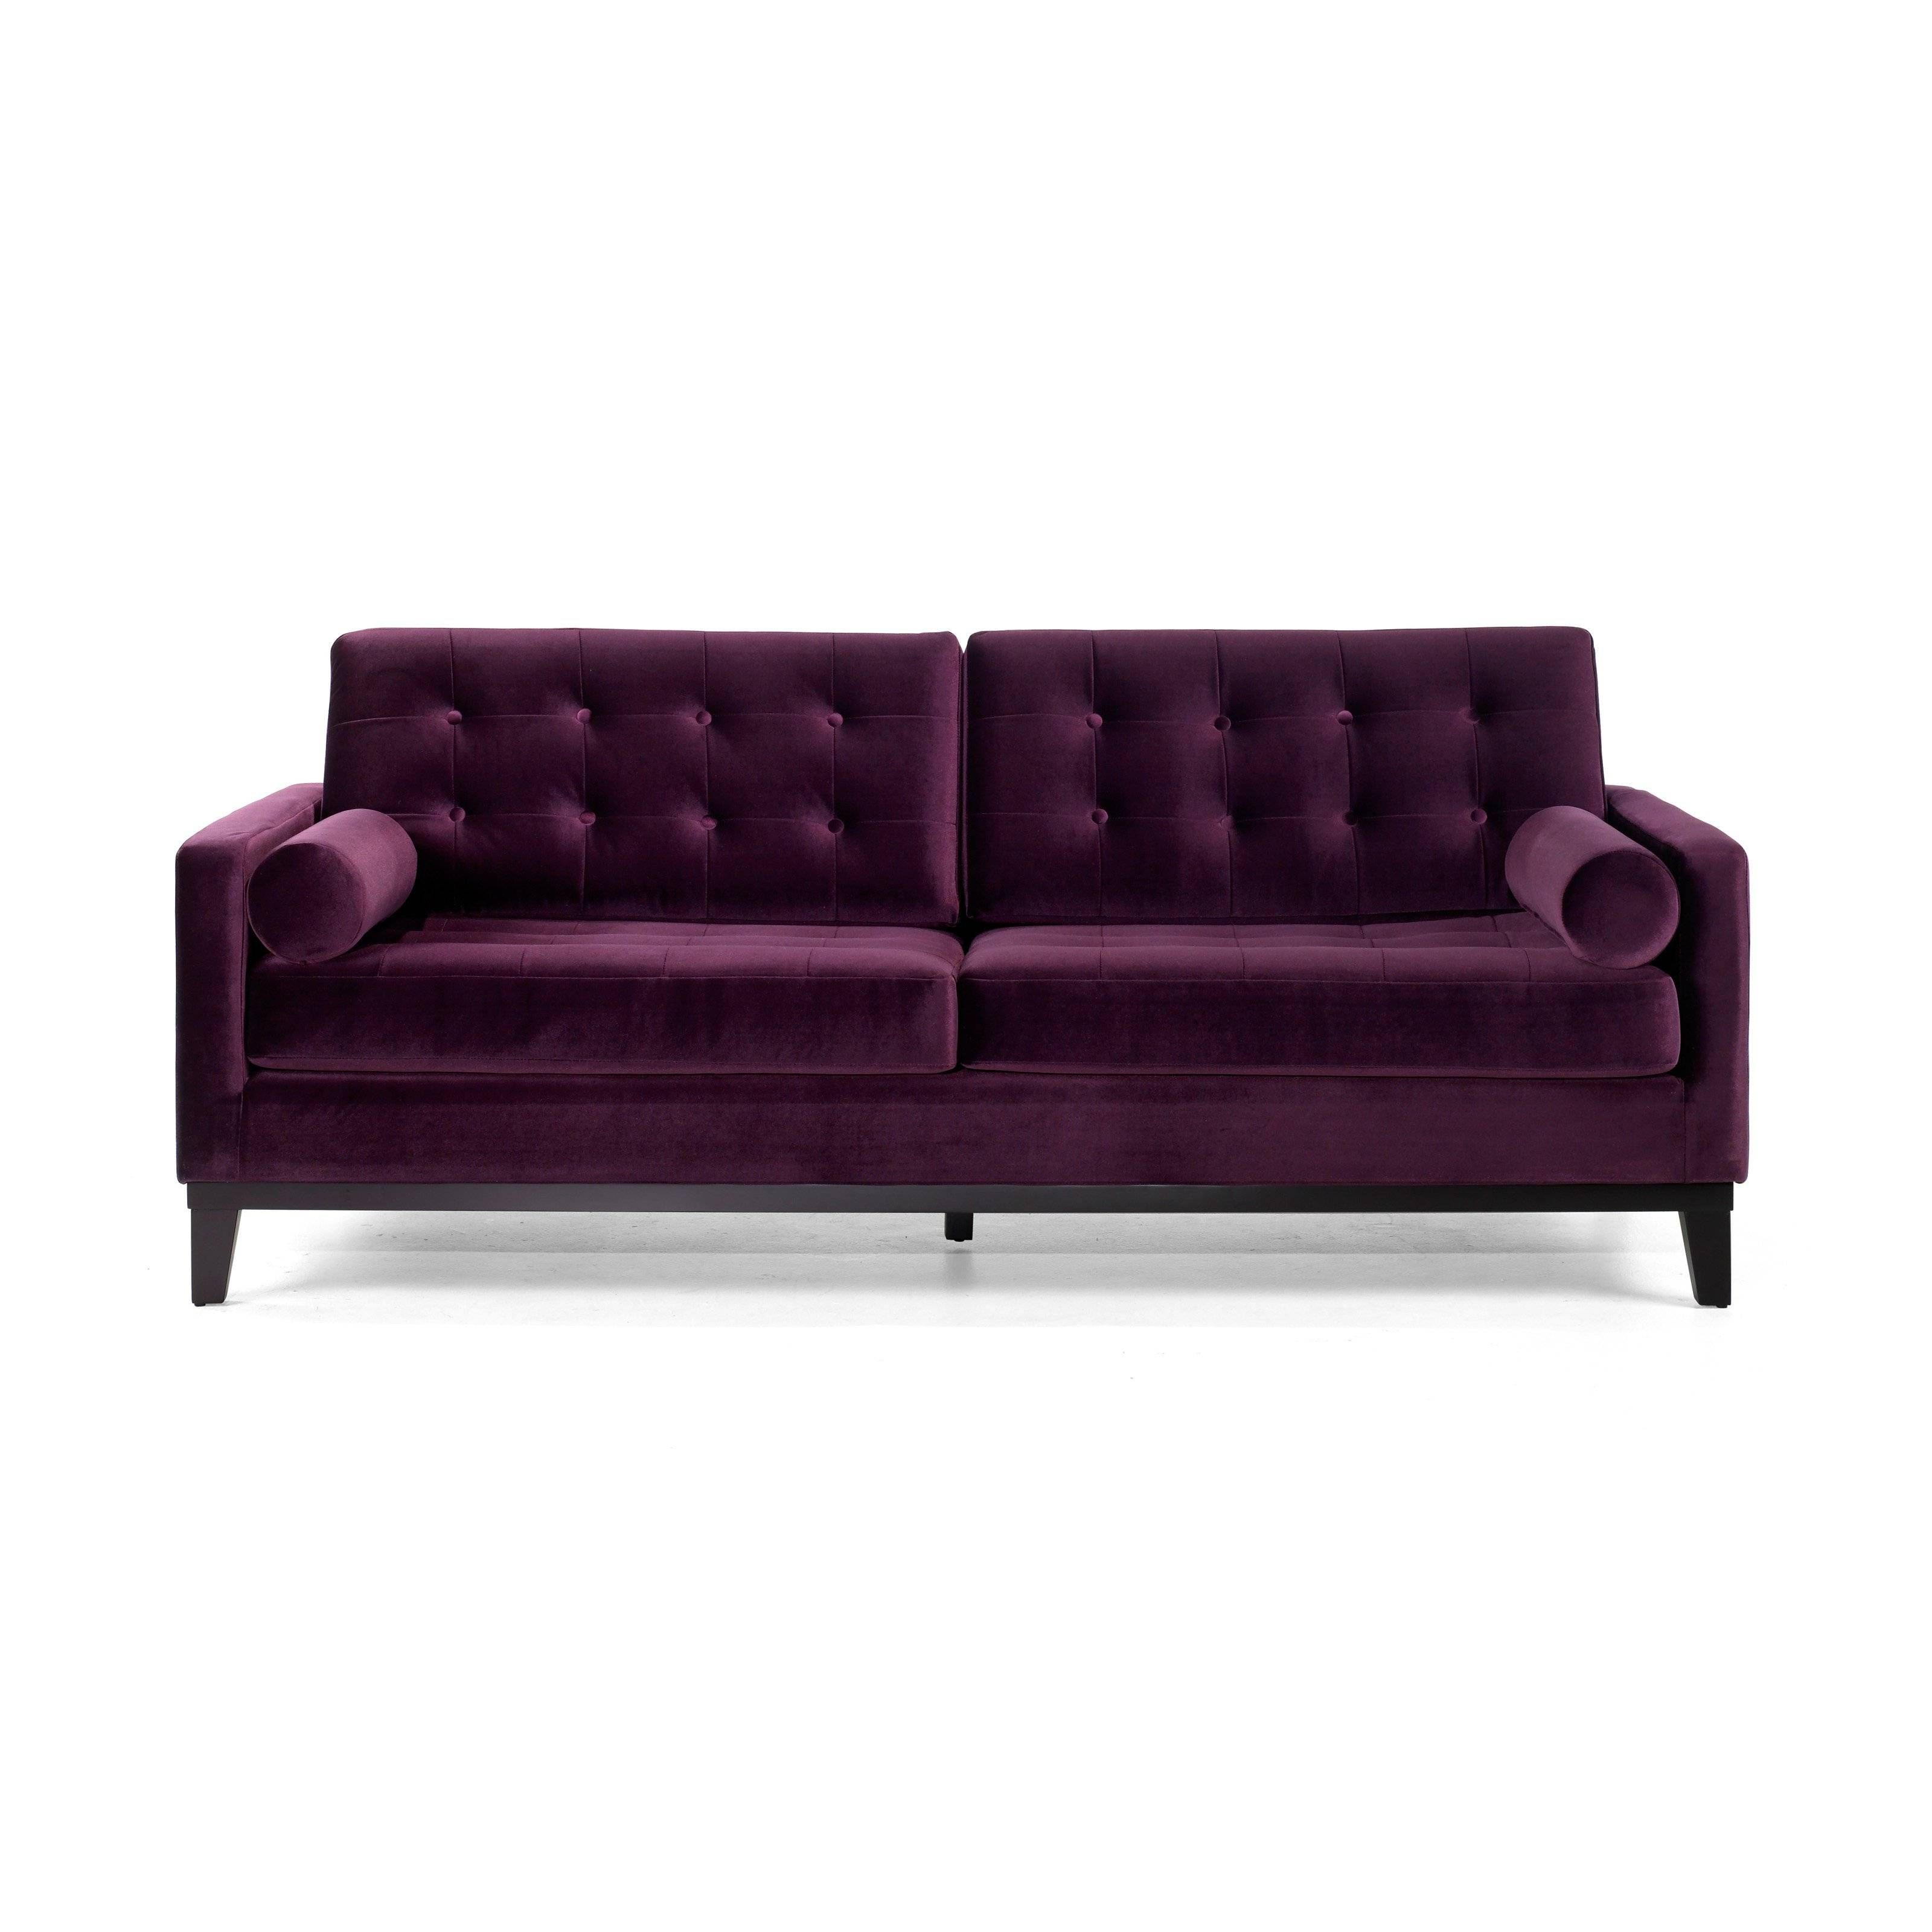 Armen Living Centennial Purple Velvet Sofa | Hayneedle Within Velvet Purple Sofas (Photo 29 of 30)